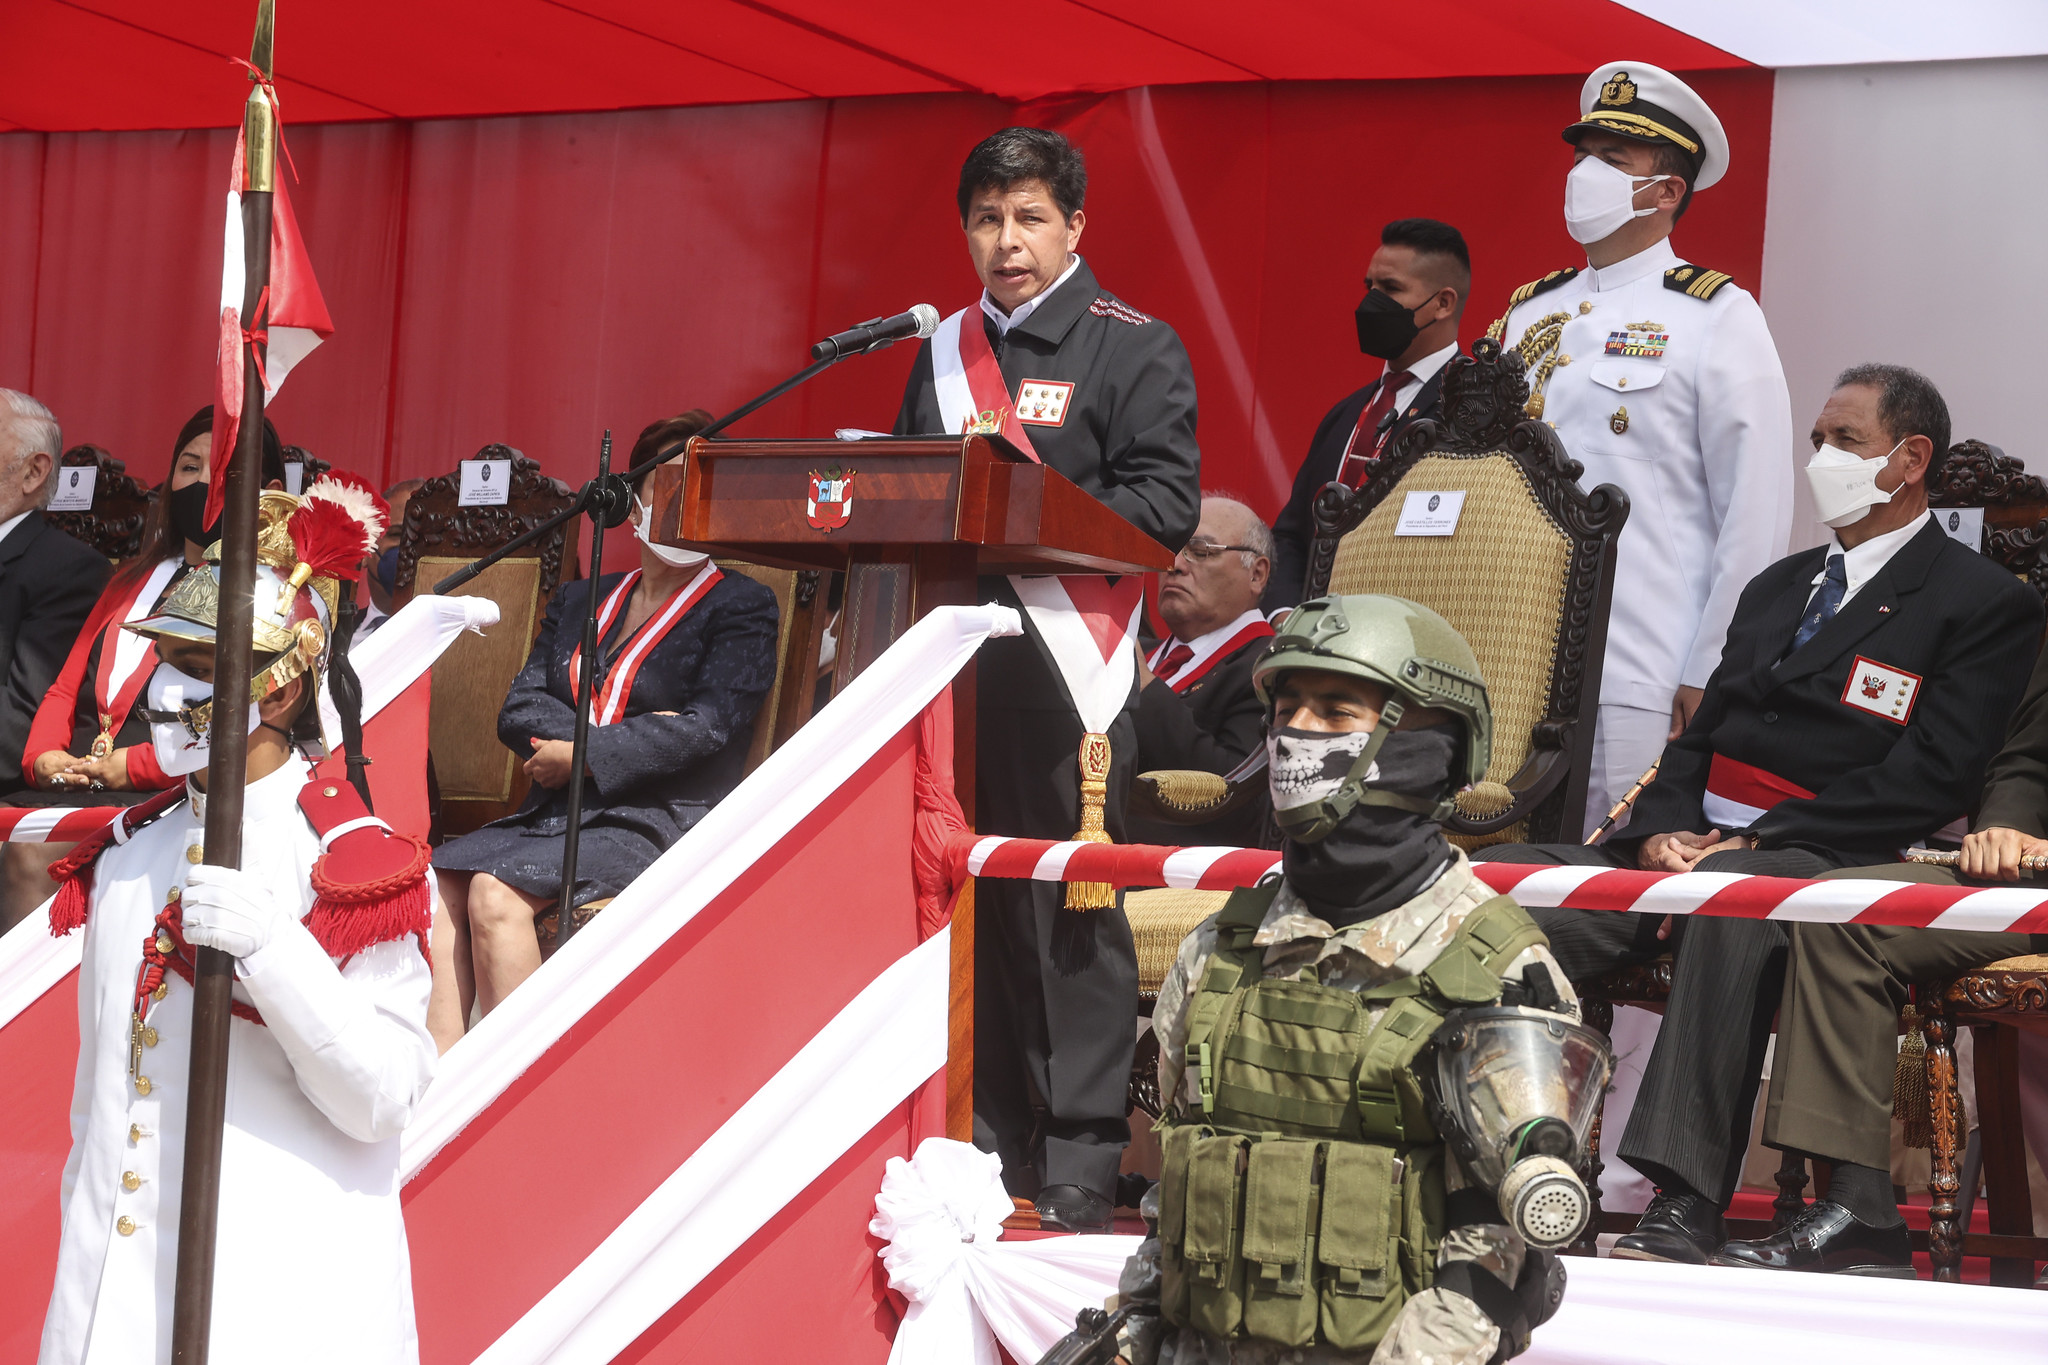 Presidente Castillo: “La política de Estado en seguridad nacional no ha retrocedido, ni retrocederá en la lucha contra el terrorismo”